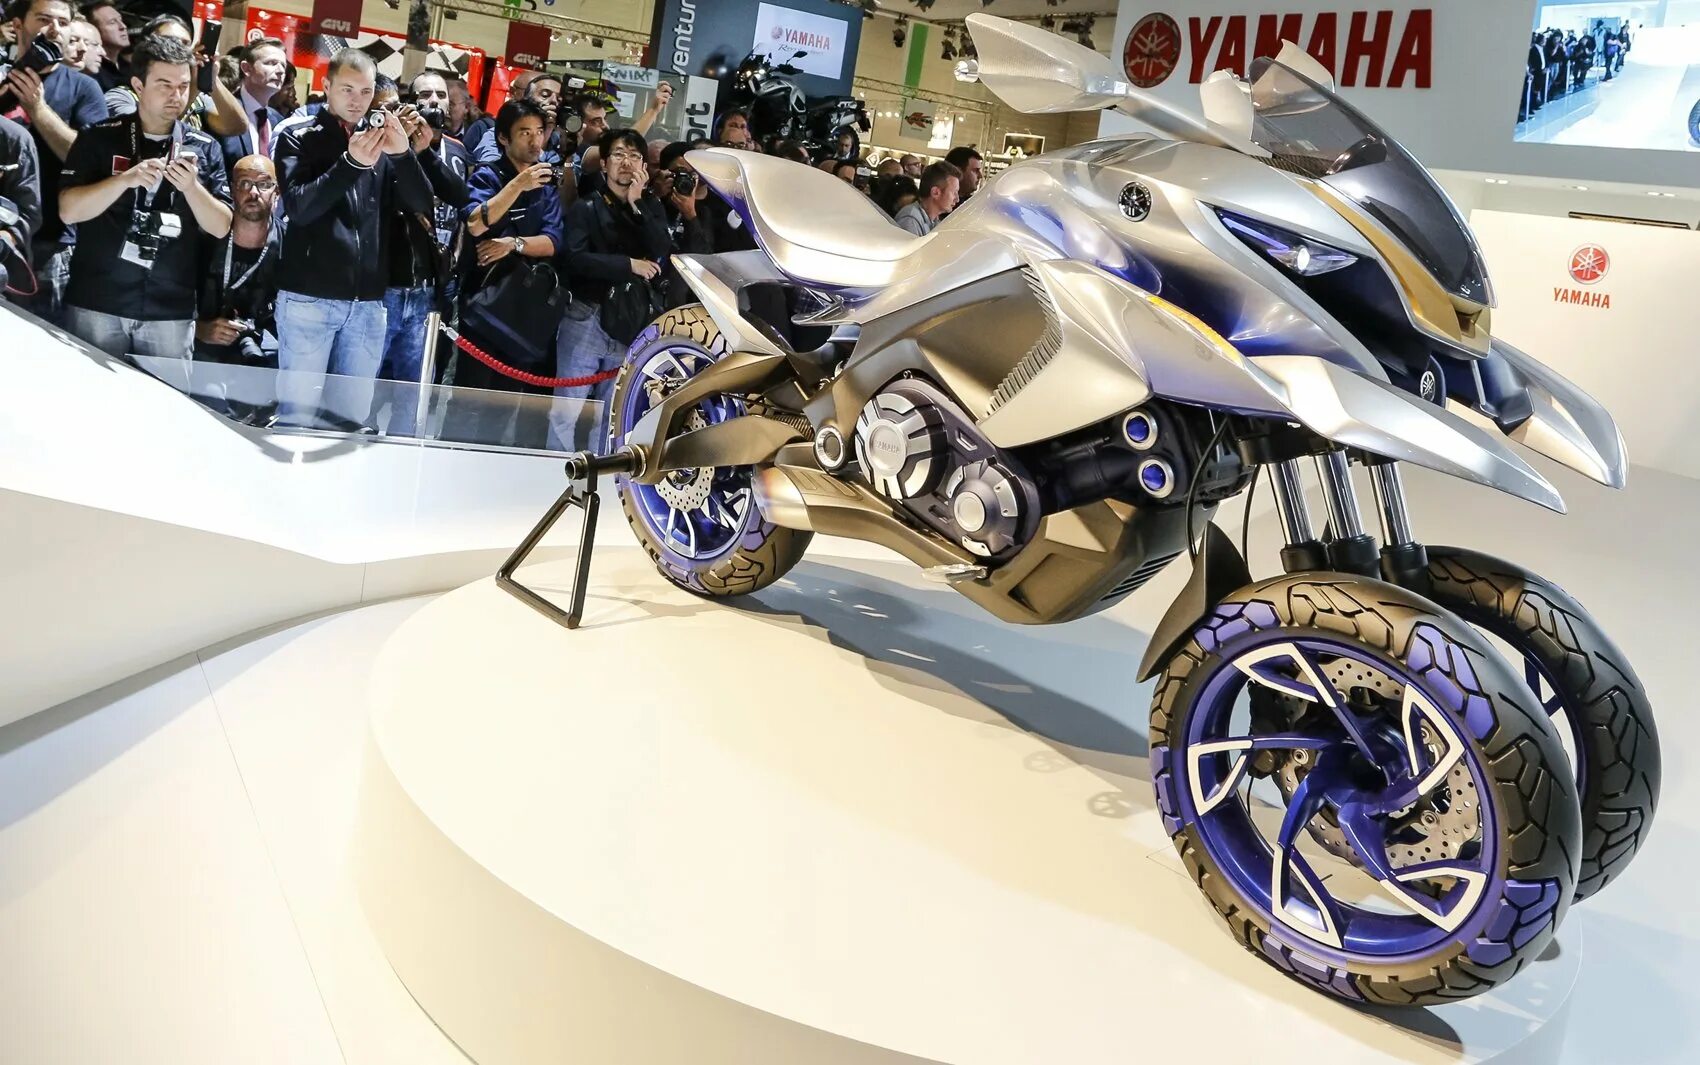 Включи мотоциклы машины. Мотоцикл Yamaha Gen 01 Concept 2015. Ямаха 2 колеса спереди. Мотоцикл с двумя передними колесами. Мотоцикл с двумя колесами спереди.